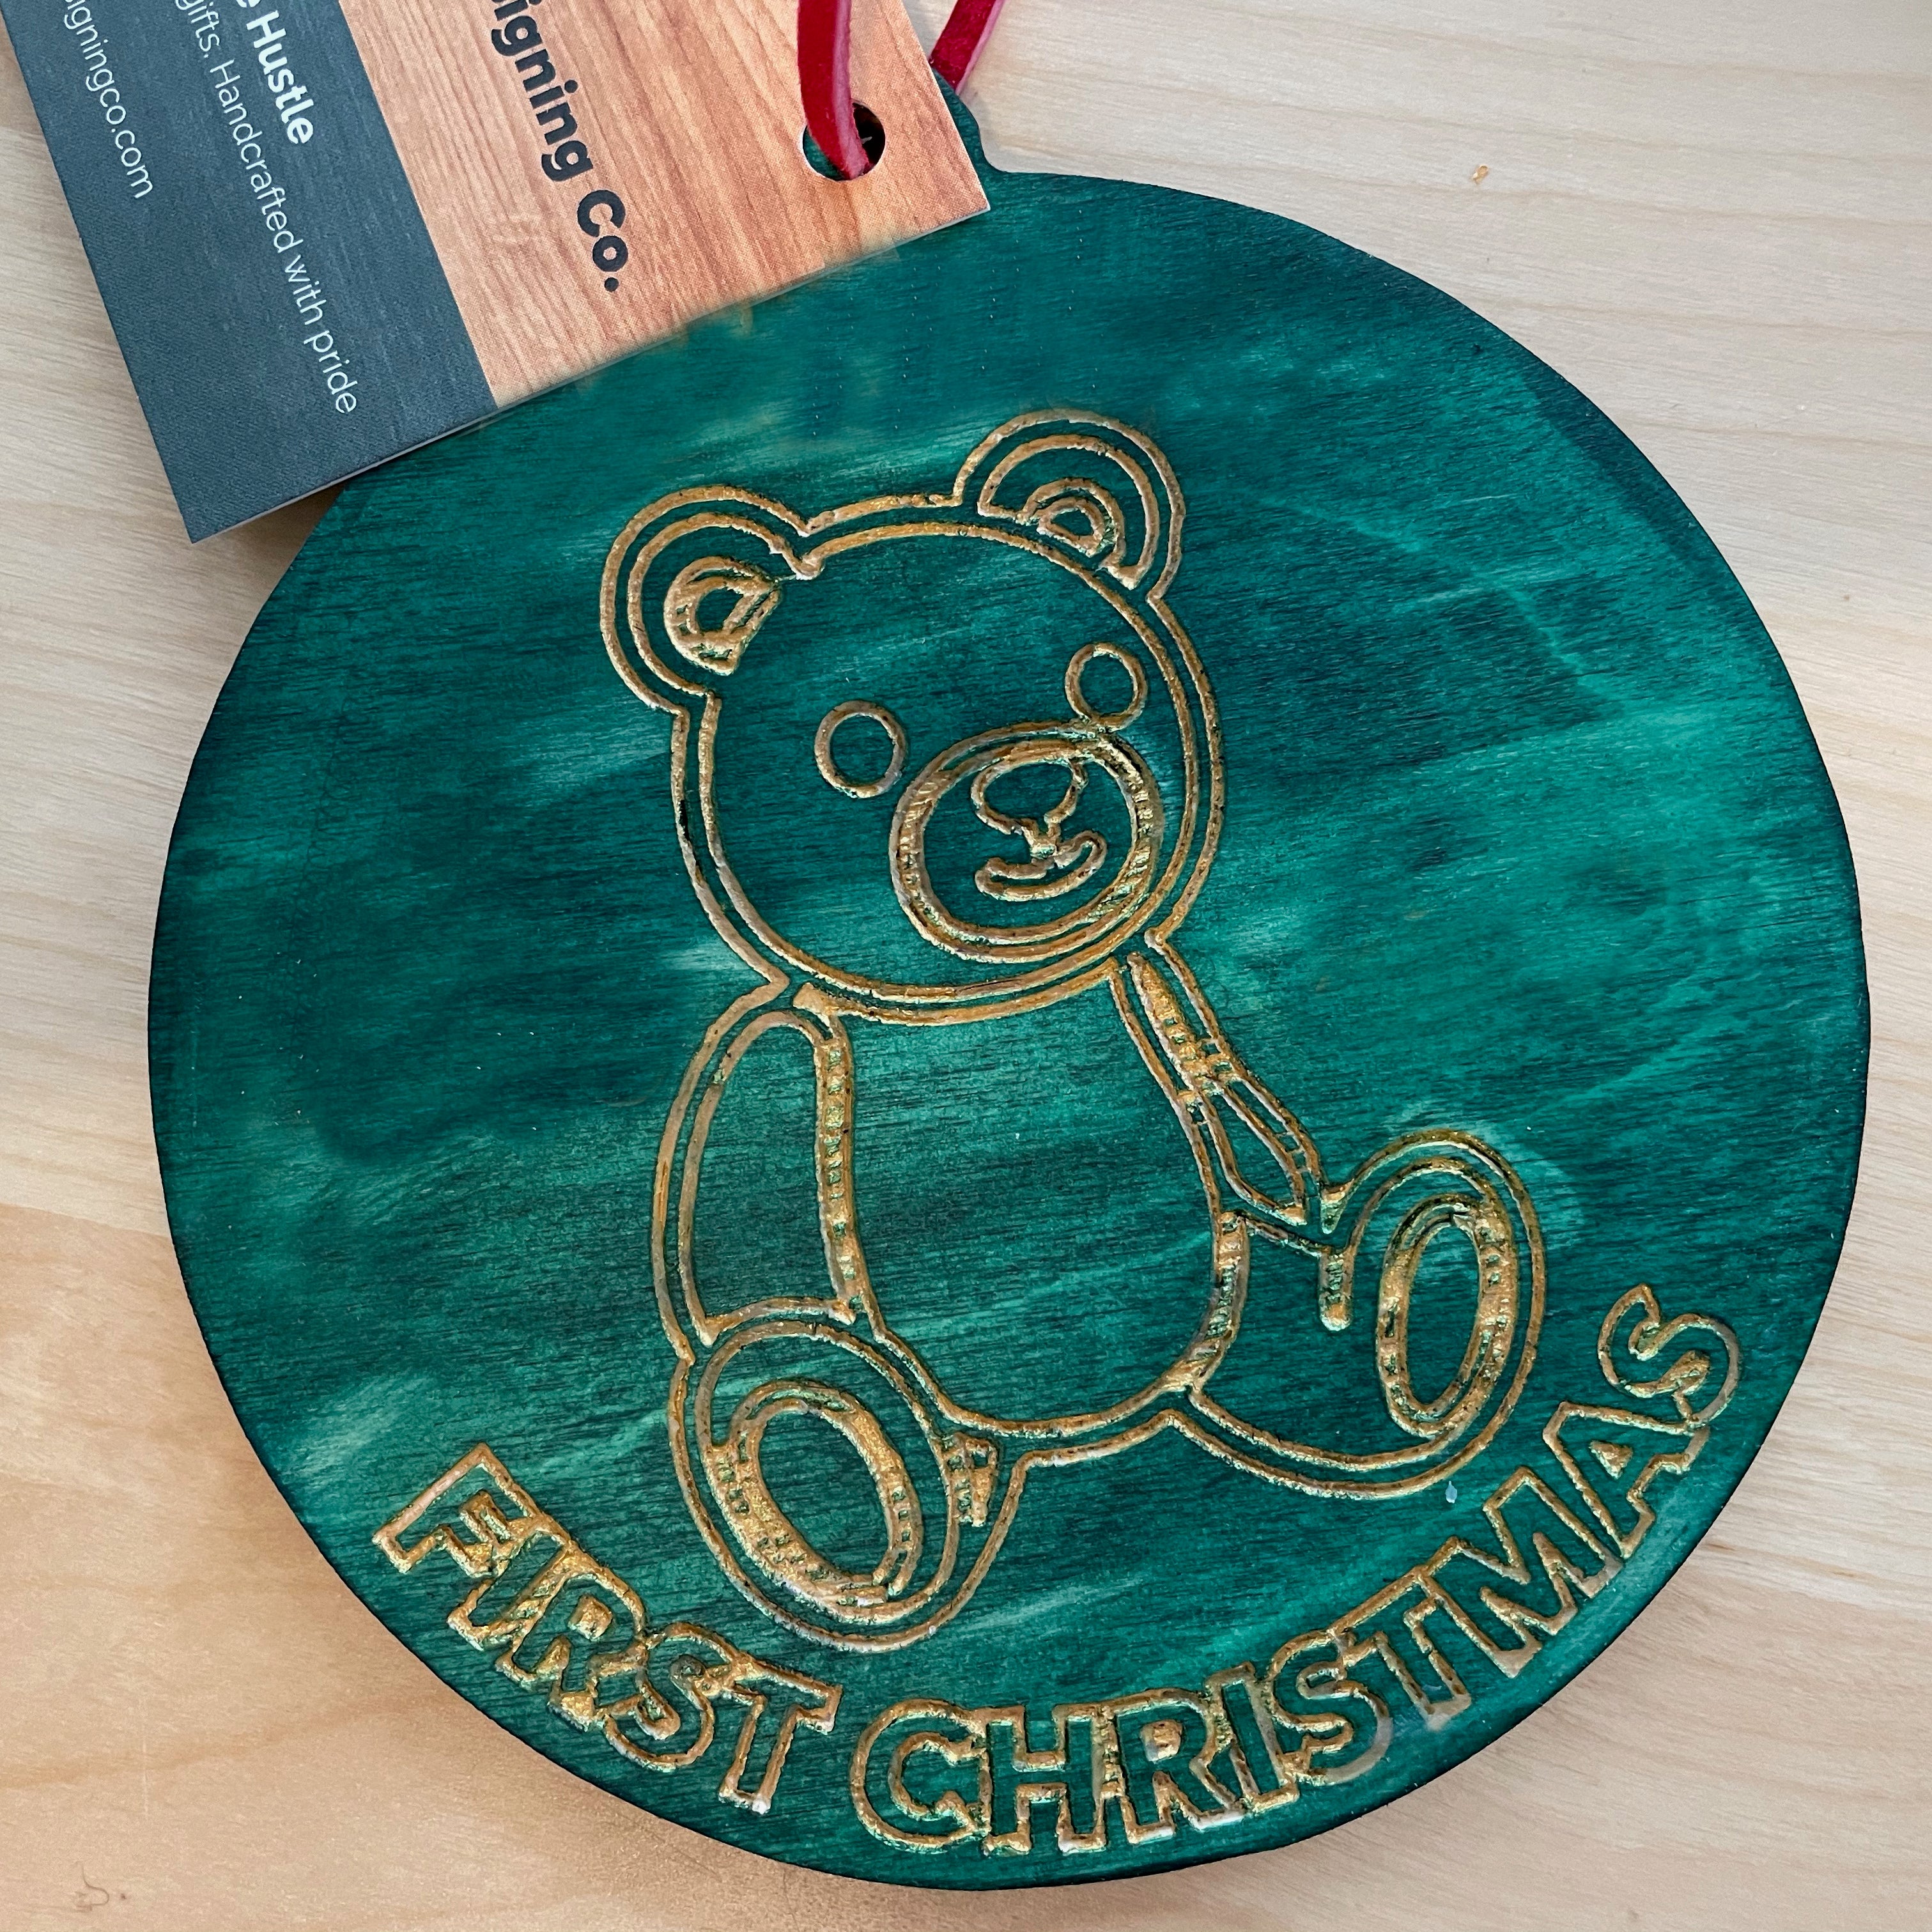 First Christmas Teddy Bear Ornament